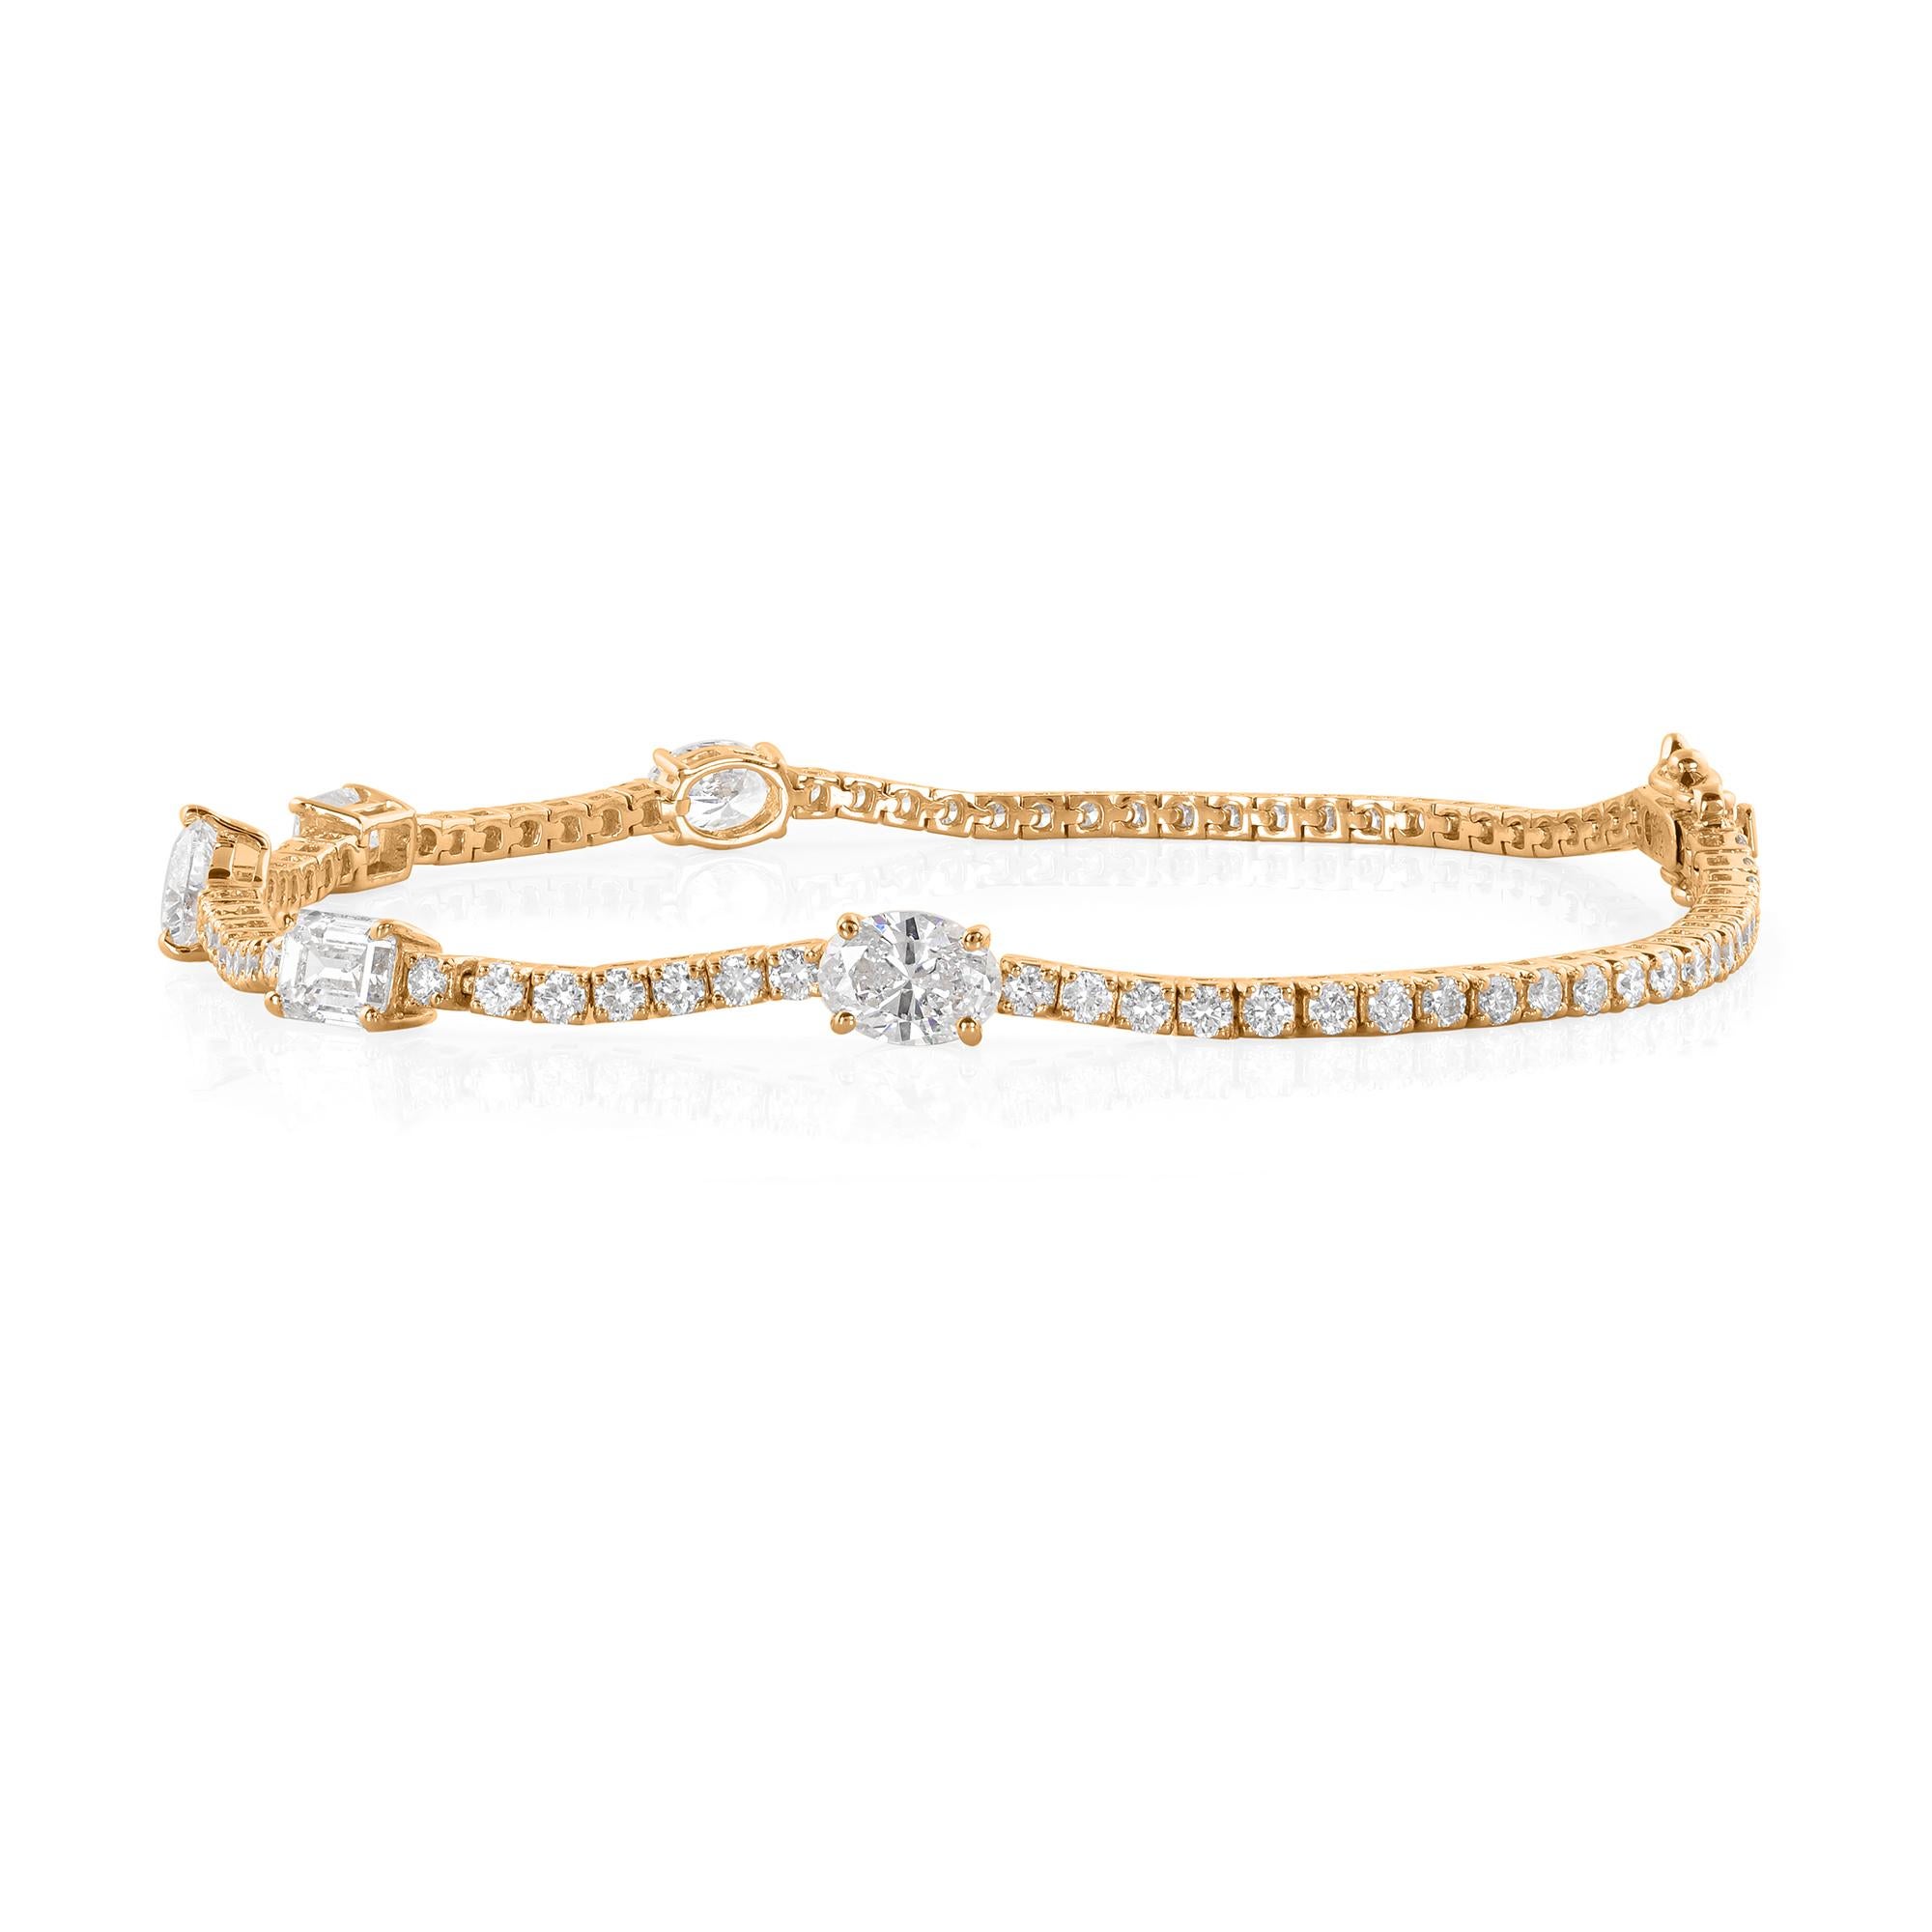 Rehaussez votre style avec l'allure enchanteresse de ce bracelet à diamants multiformes de 3,64 carats, méticuleusement fabriqué à la main dans un luxueux or jaune 14 carats. Ce superbe bijou fait main célèbre la diversité et l'éclat des diamants